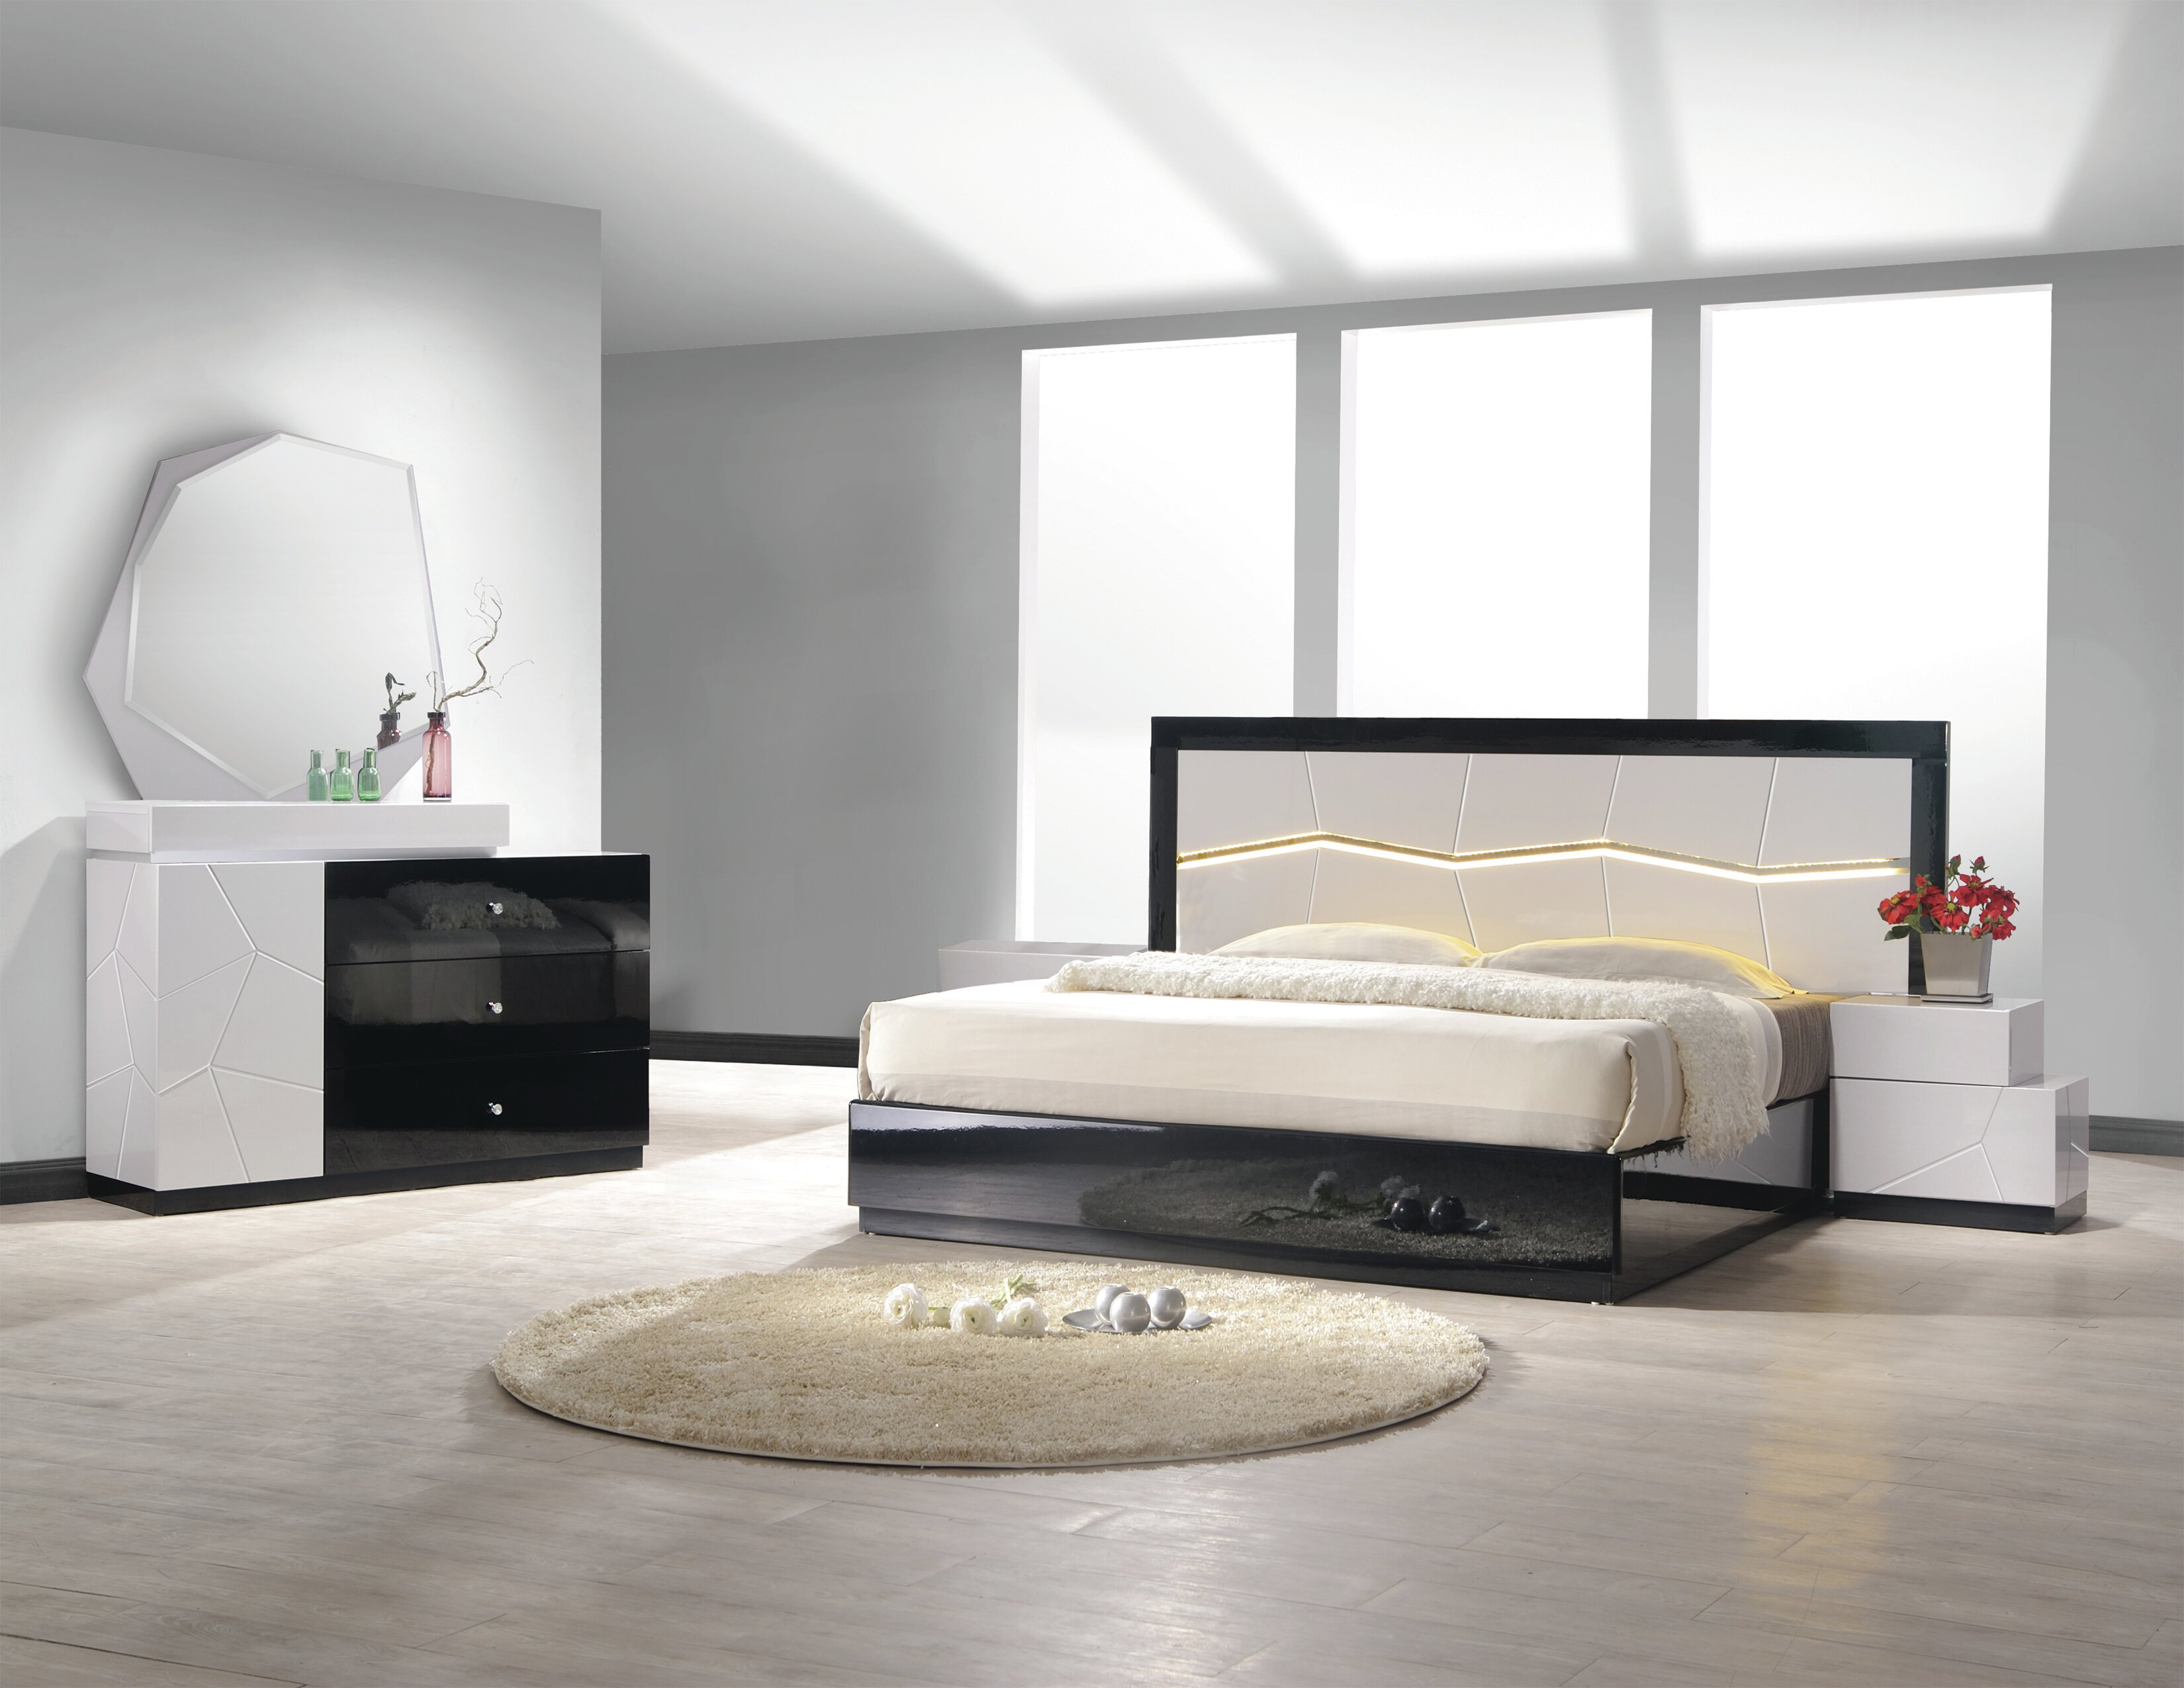 Jinn Platform 5 Piece Bedroom Set pertaining to size 3300 X 2550